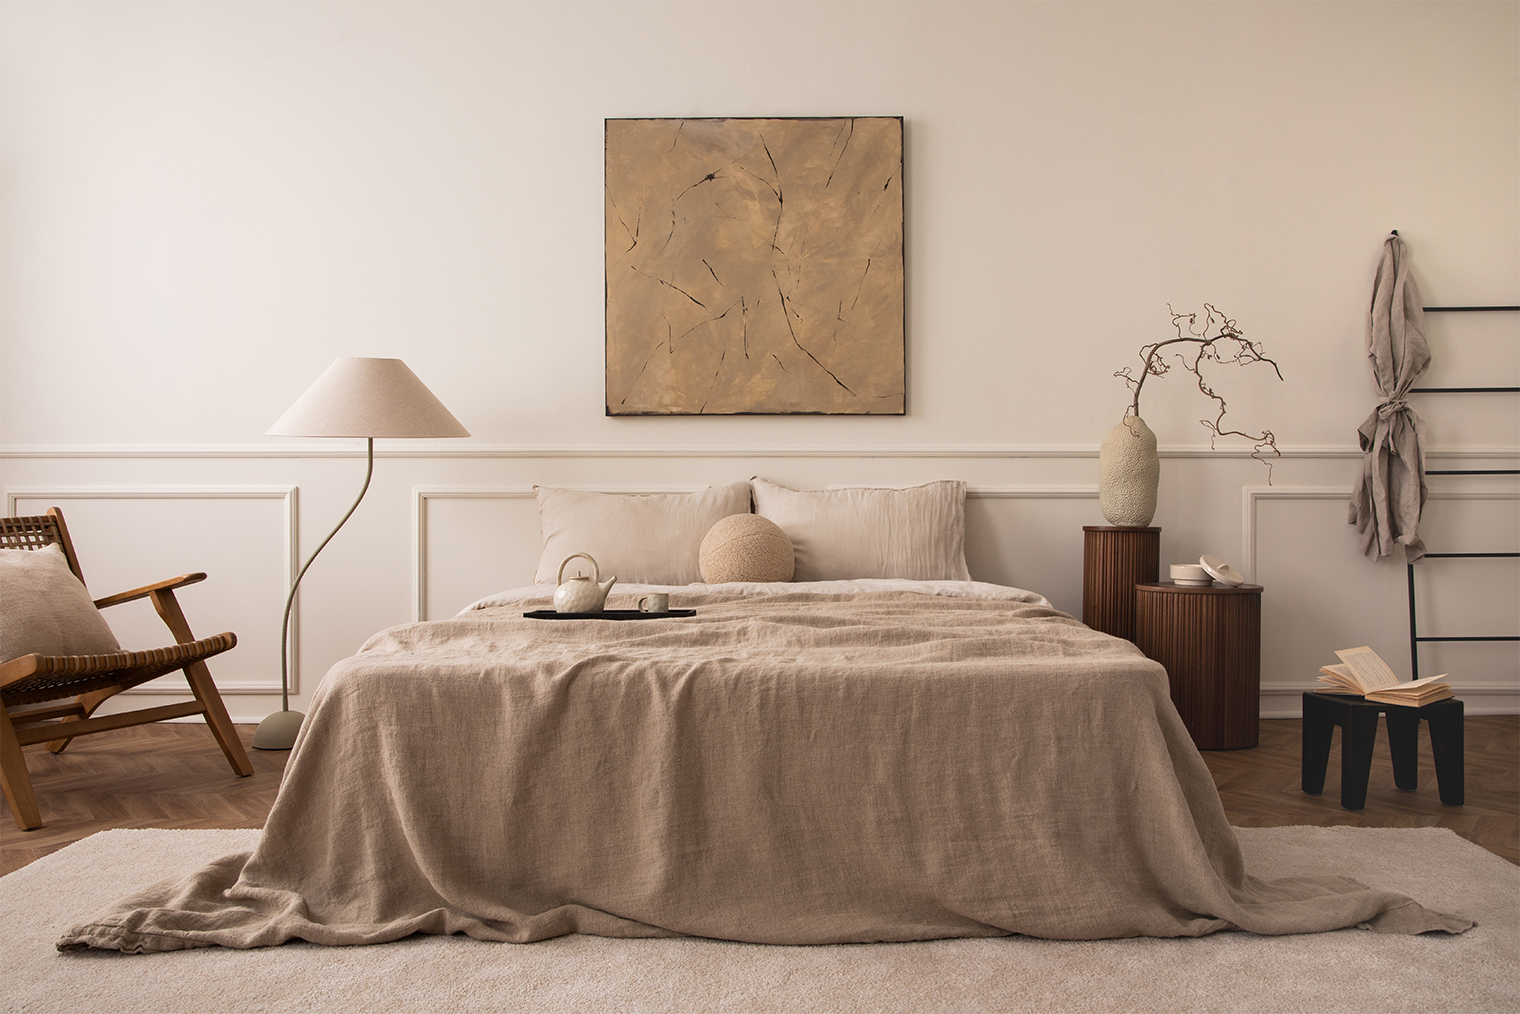 Для спальни в стиле джапанди выбирайте большую низкую кровать и дополняйте округлыми столиками, бежевым текстилем и деревянными деталями. Фотография: Followtheflow / Shutterstock